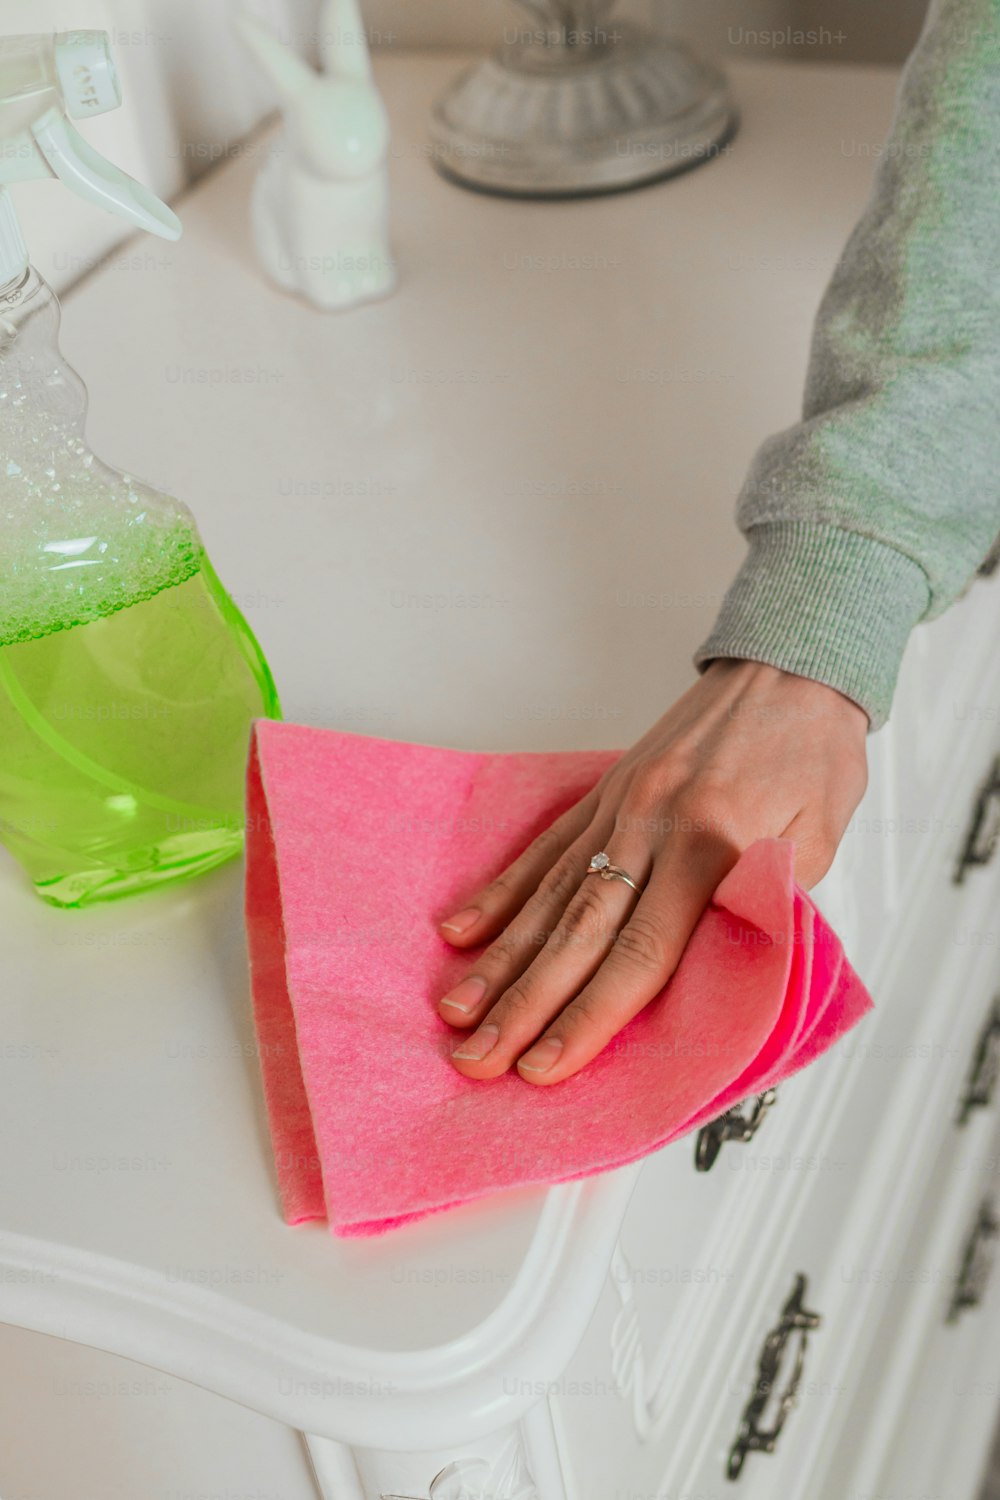 Una persona limpiando una encimera con una esponja